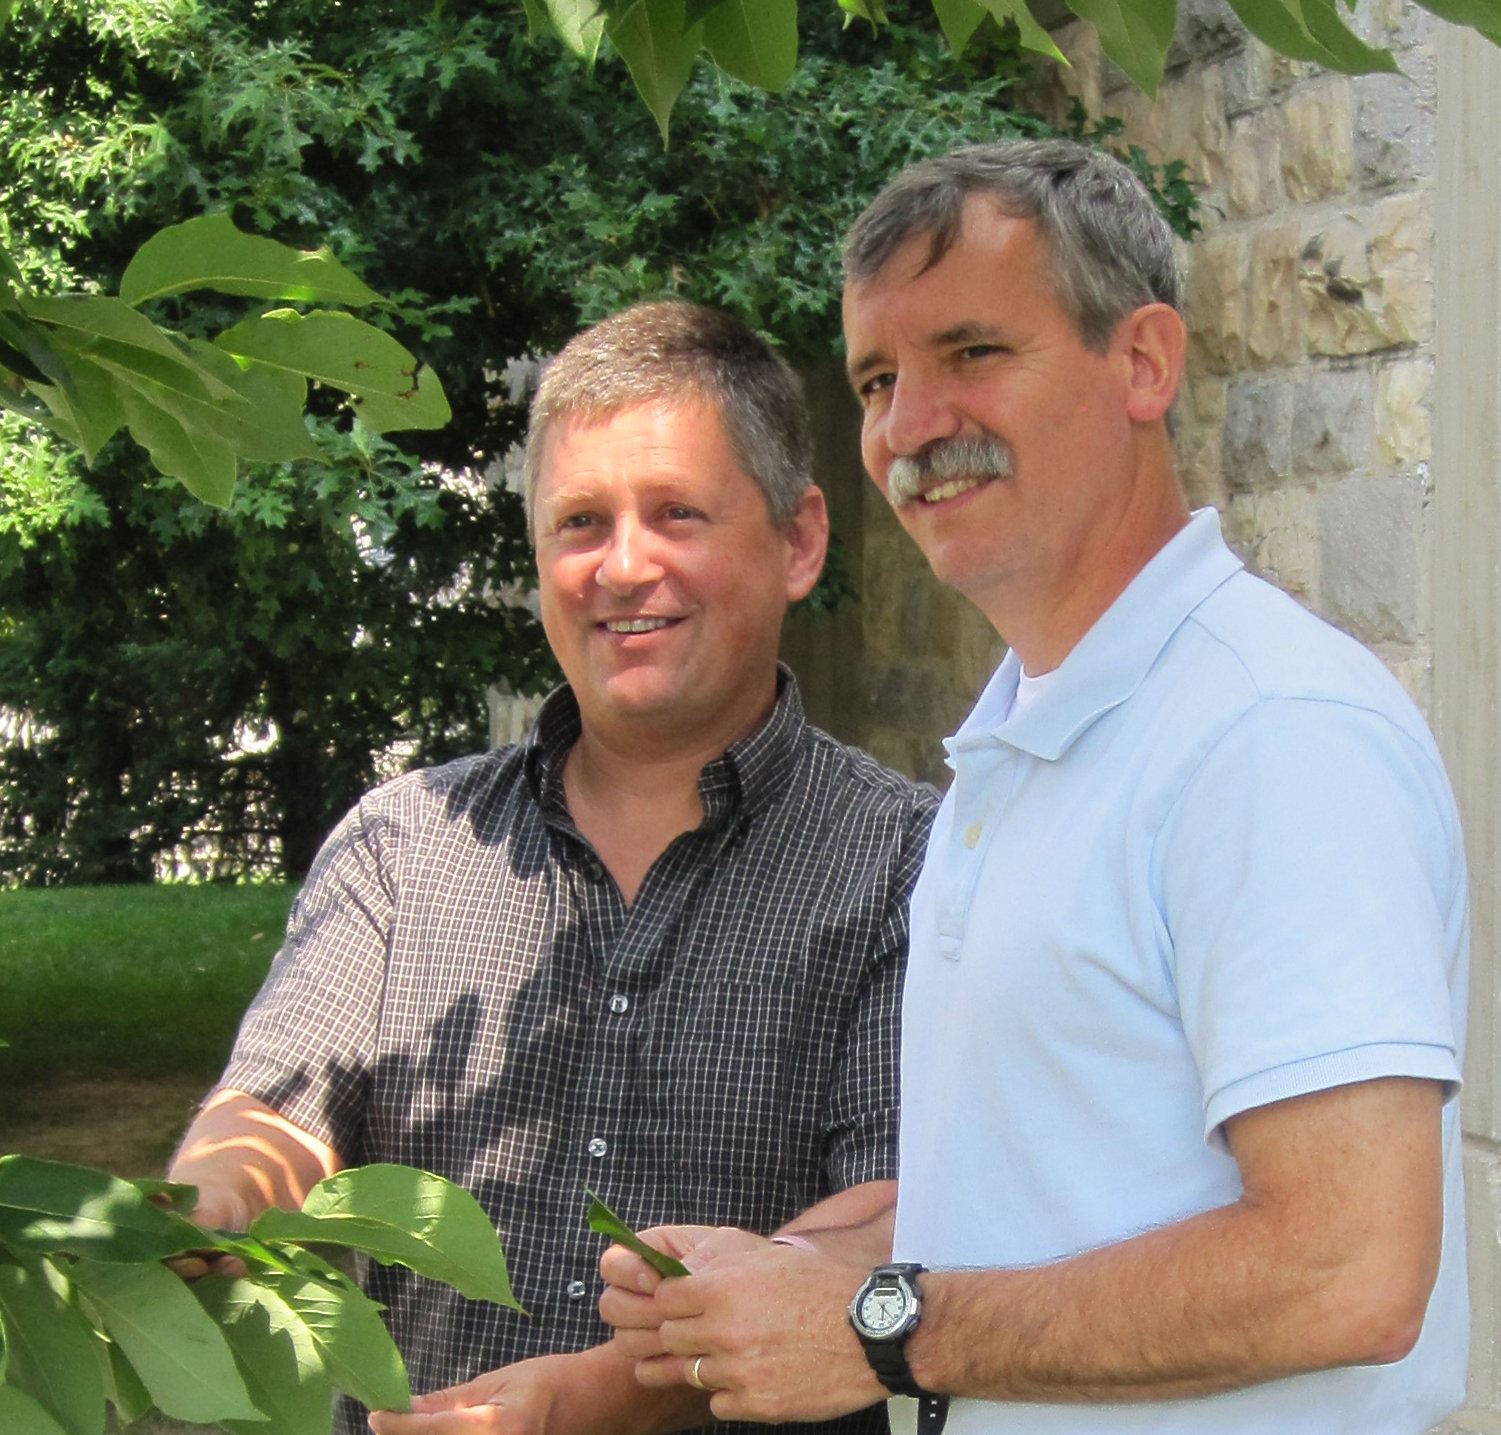 John Peterson and John Seiler standing near a tree.